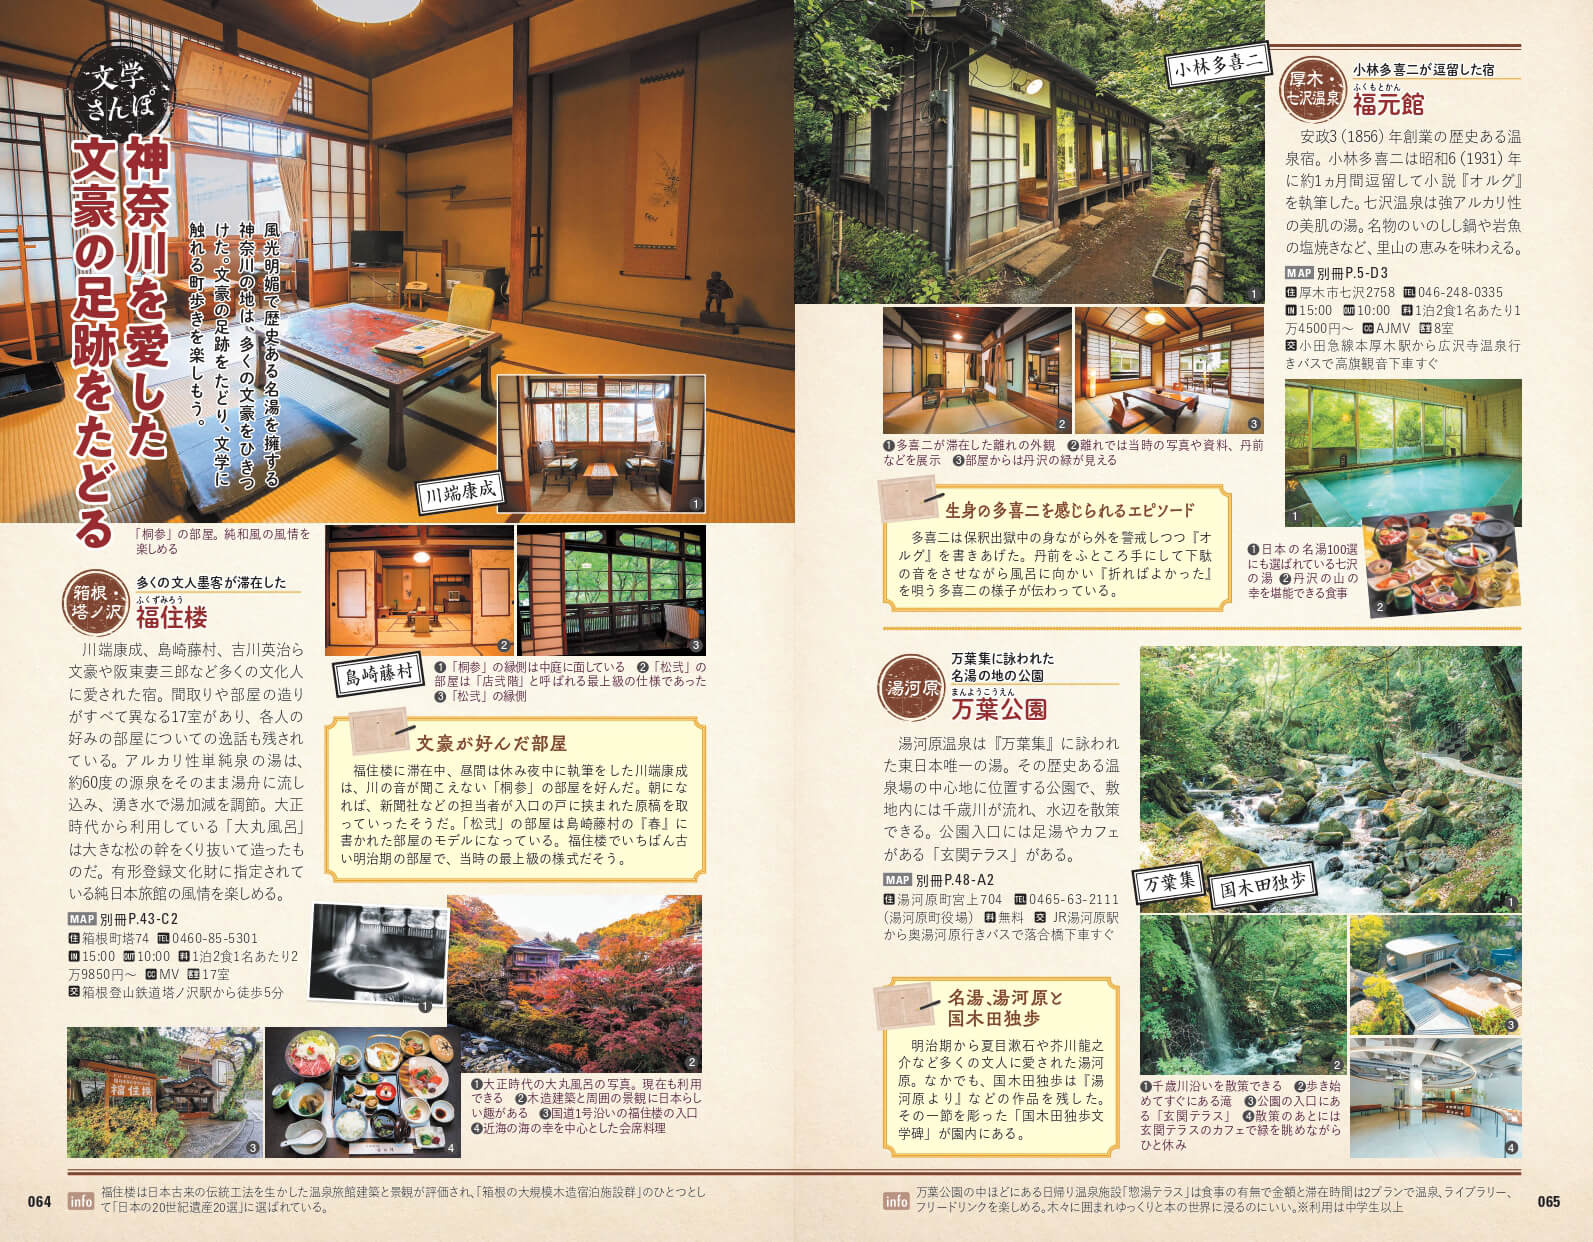 「文豪が愛した名湯や宿がある地は、緑あふれる絶景に日本古来の伝統家屋が調和し、心癒やされる旅先」紙面